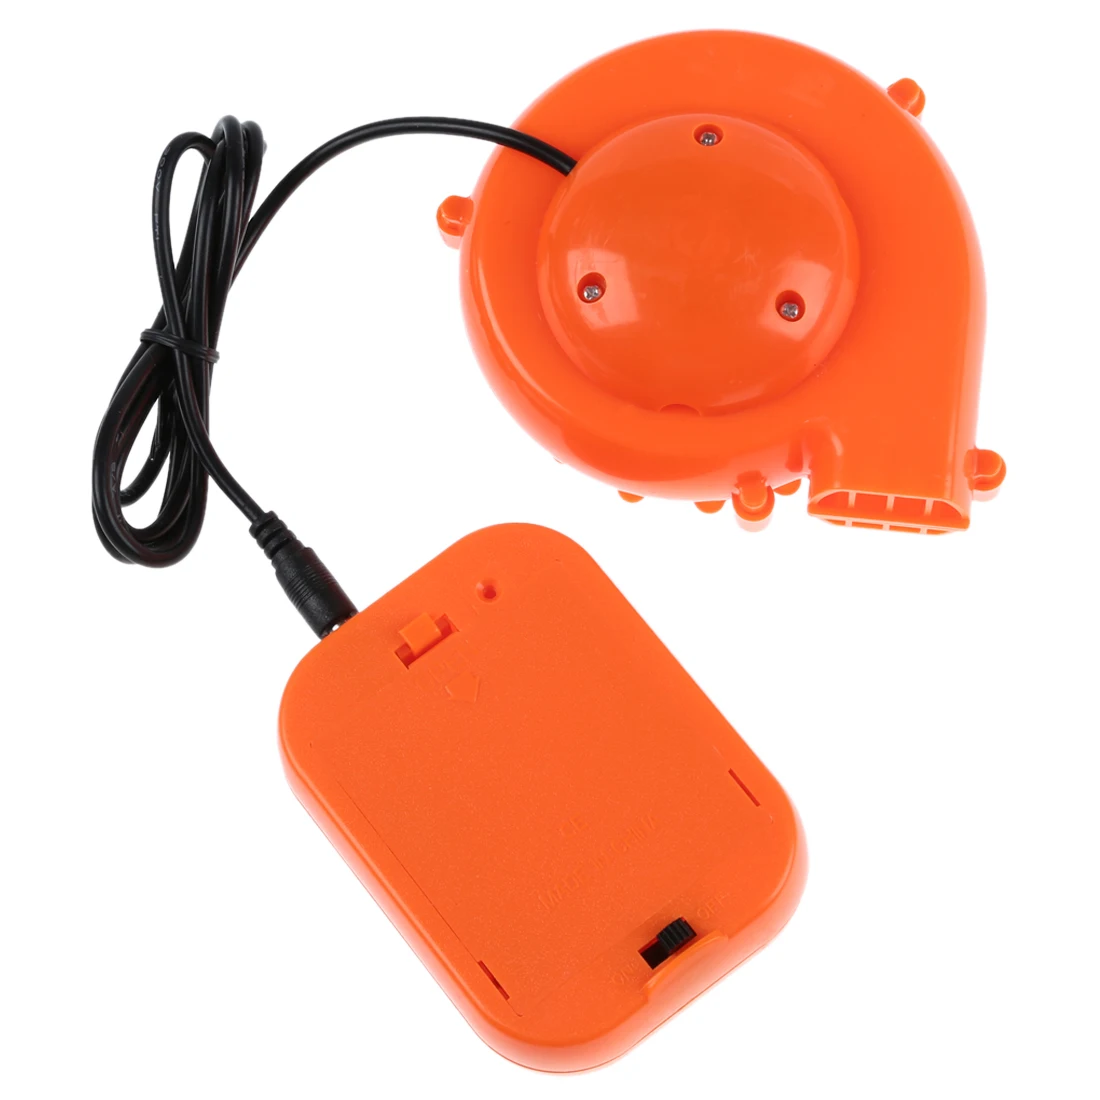 Миниатюрный вентилятор для головы талисмана надувной костюм 6 в питание 4xAA сухая батарея оранжевый он используется для режима газа, надувной